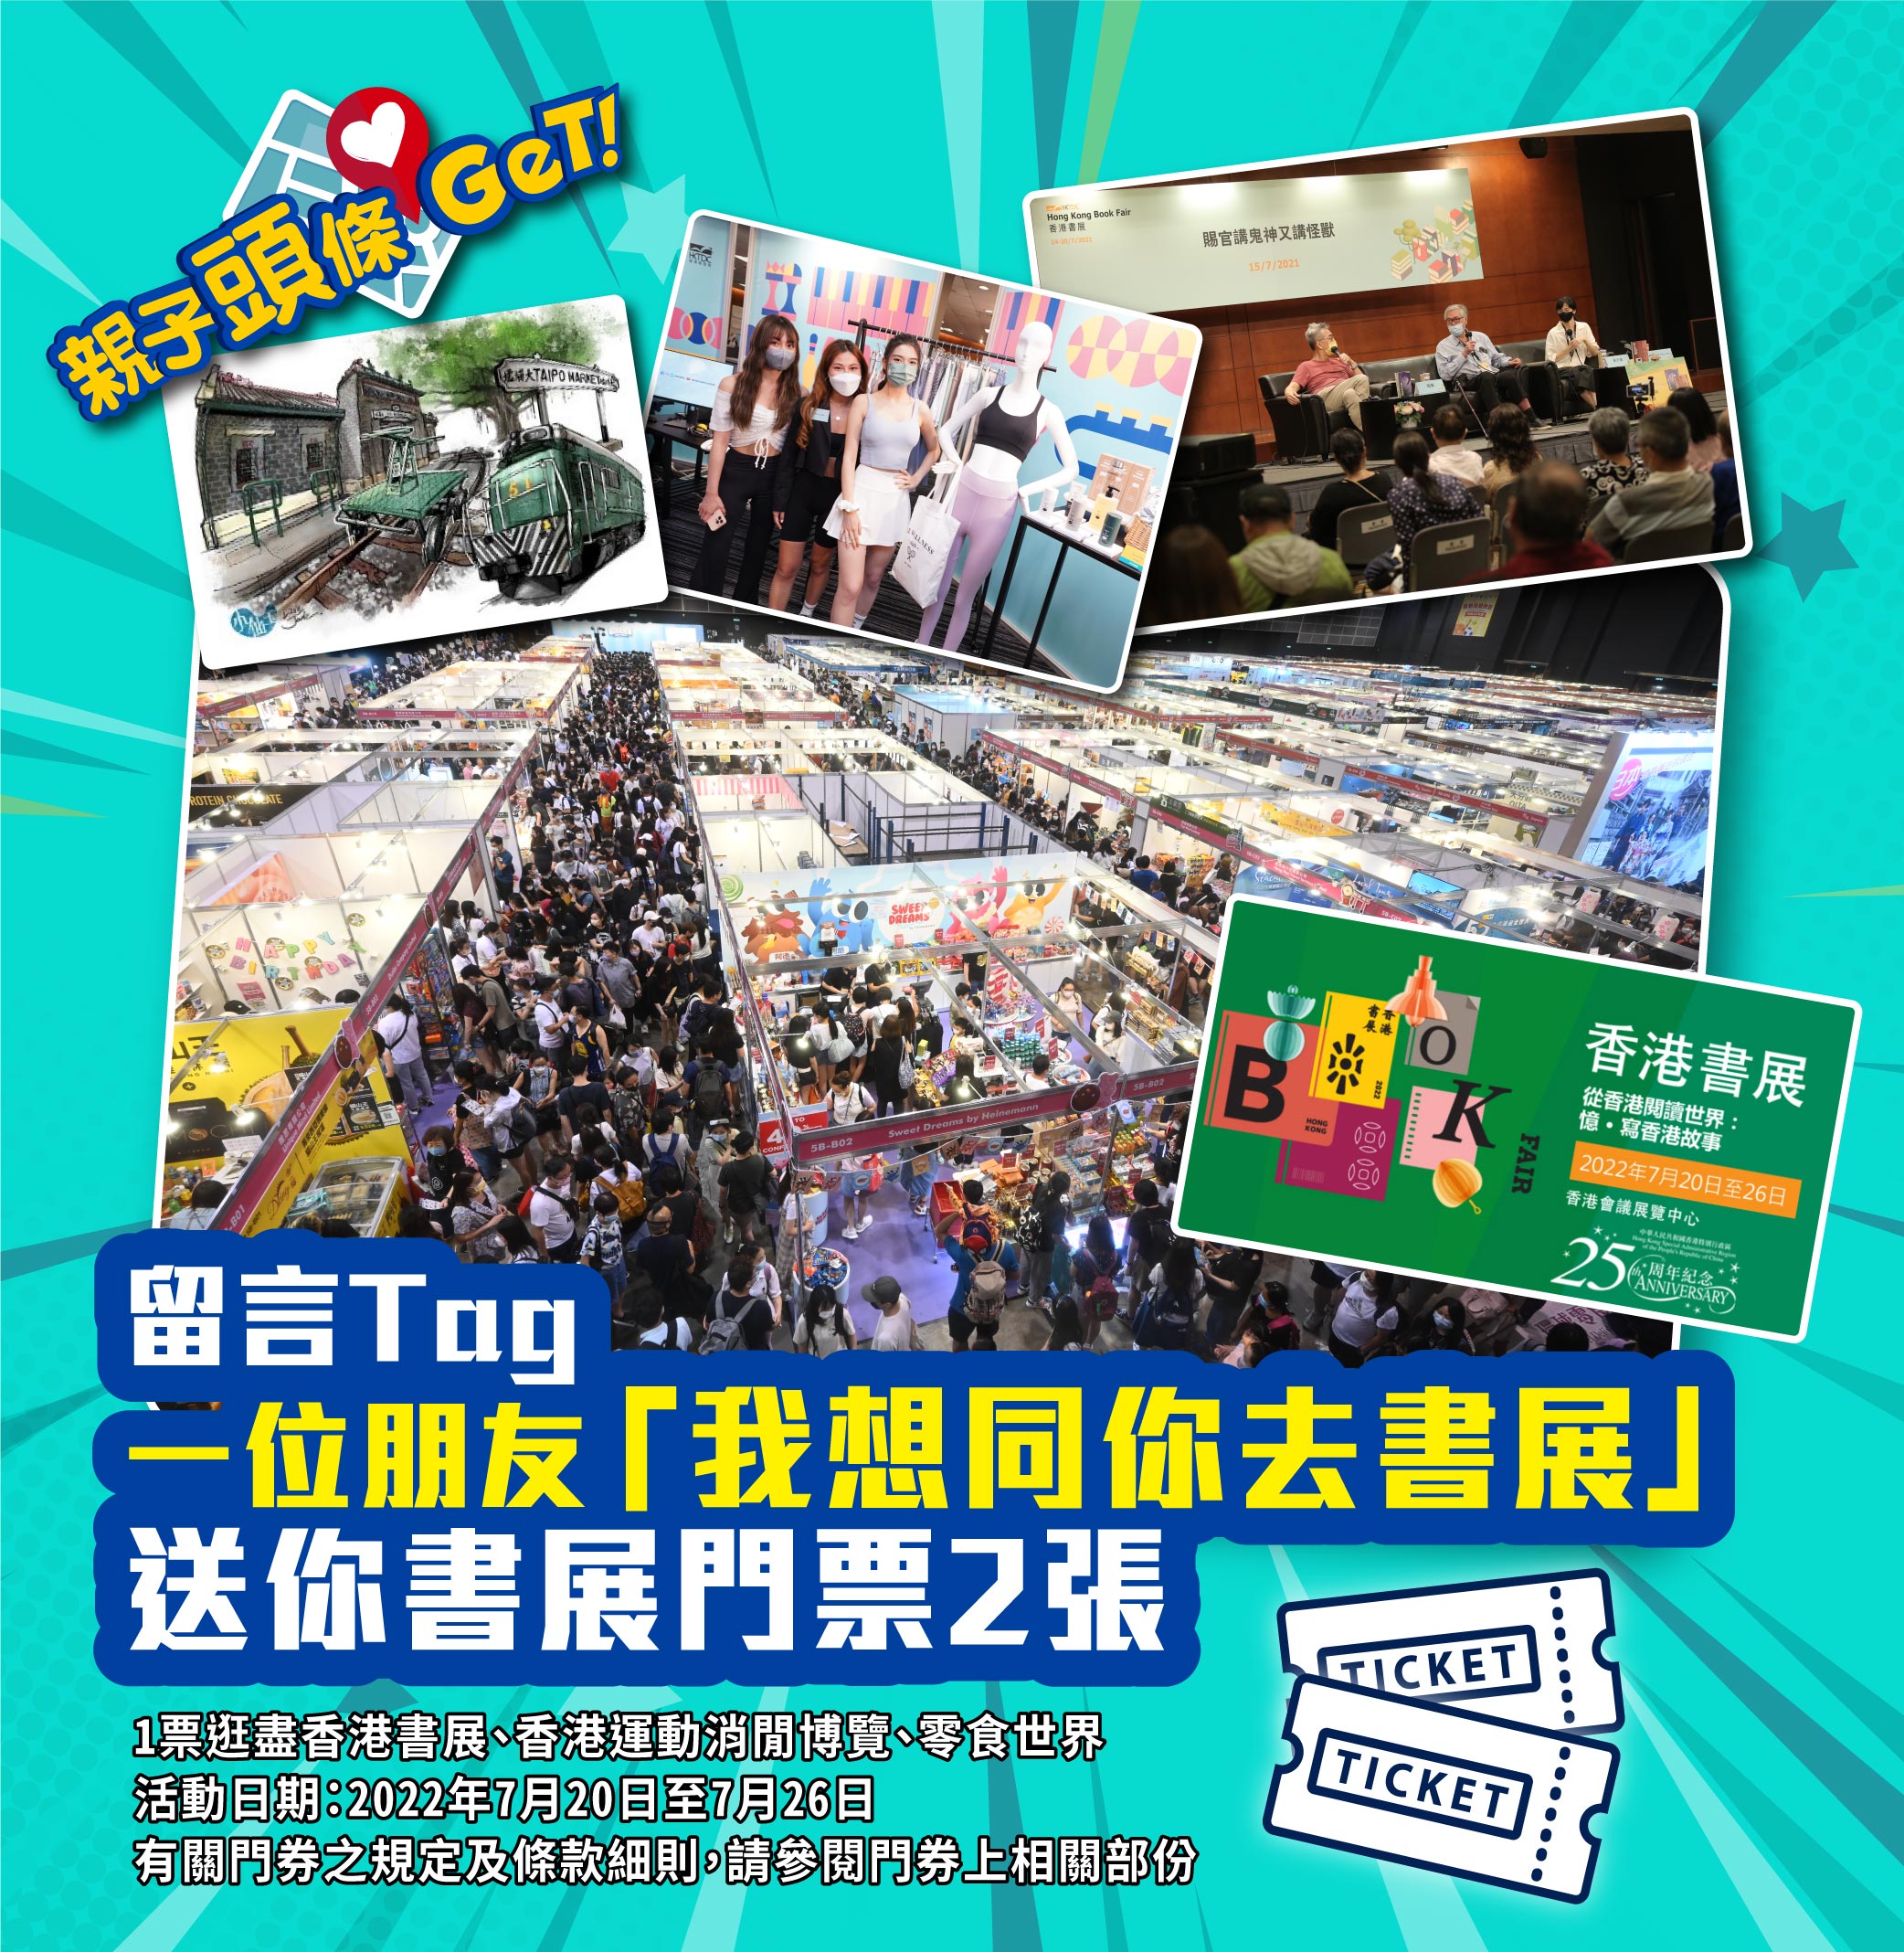 【親子頭條GET】送你「香港書展2022」門票2張 